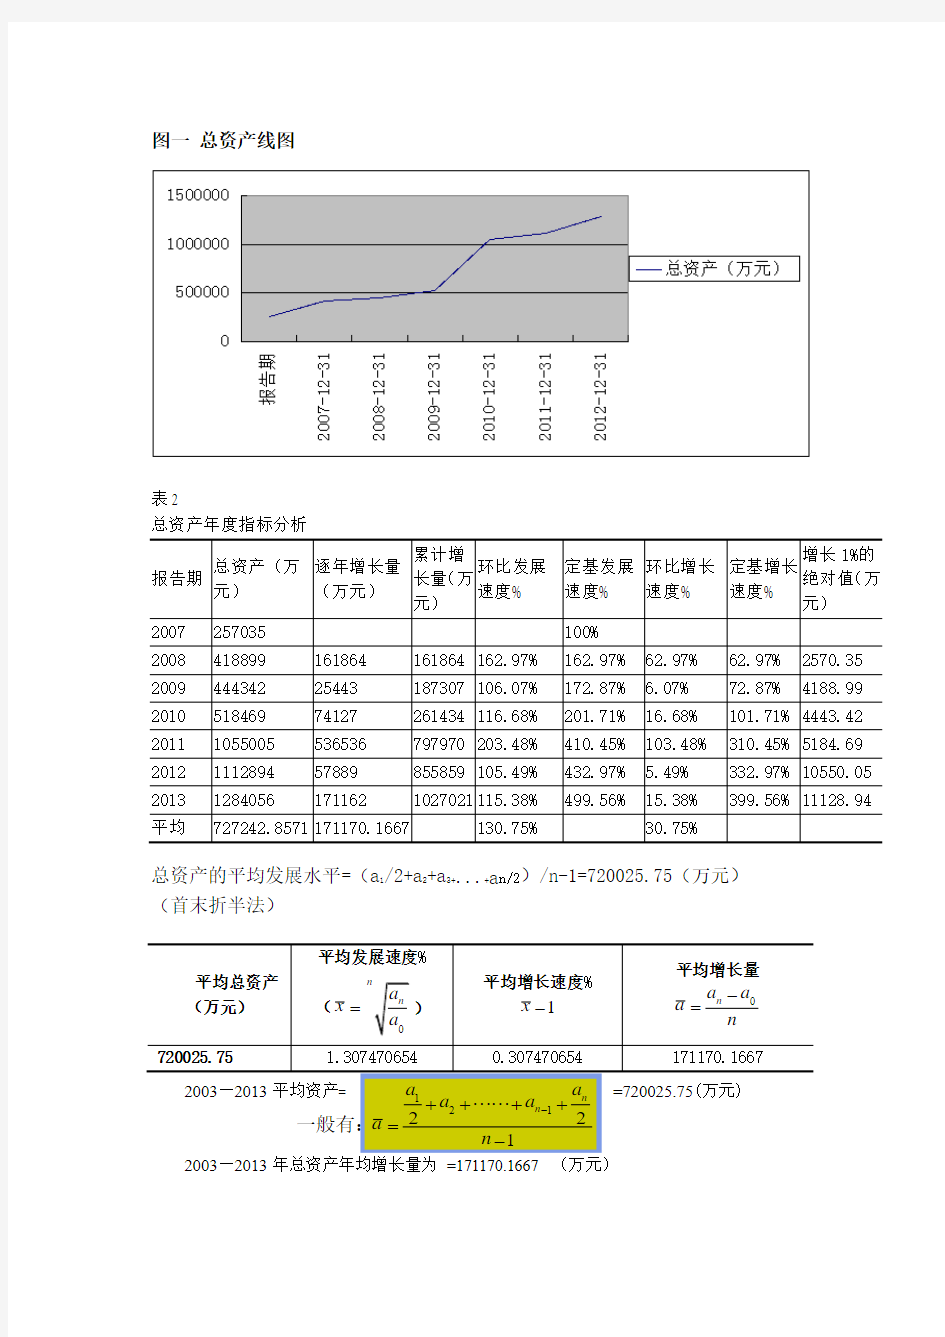 唐山港数据分析报告